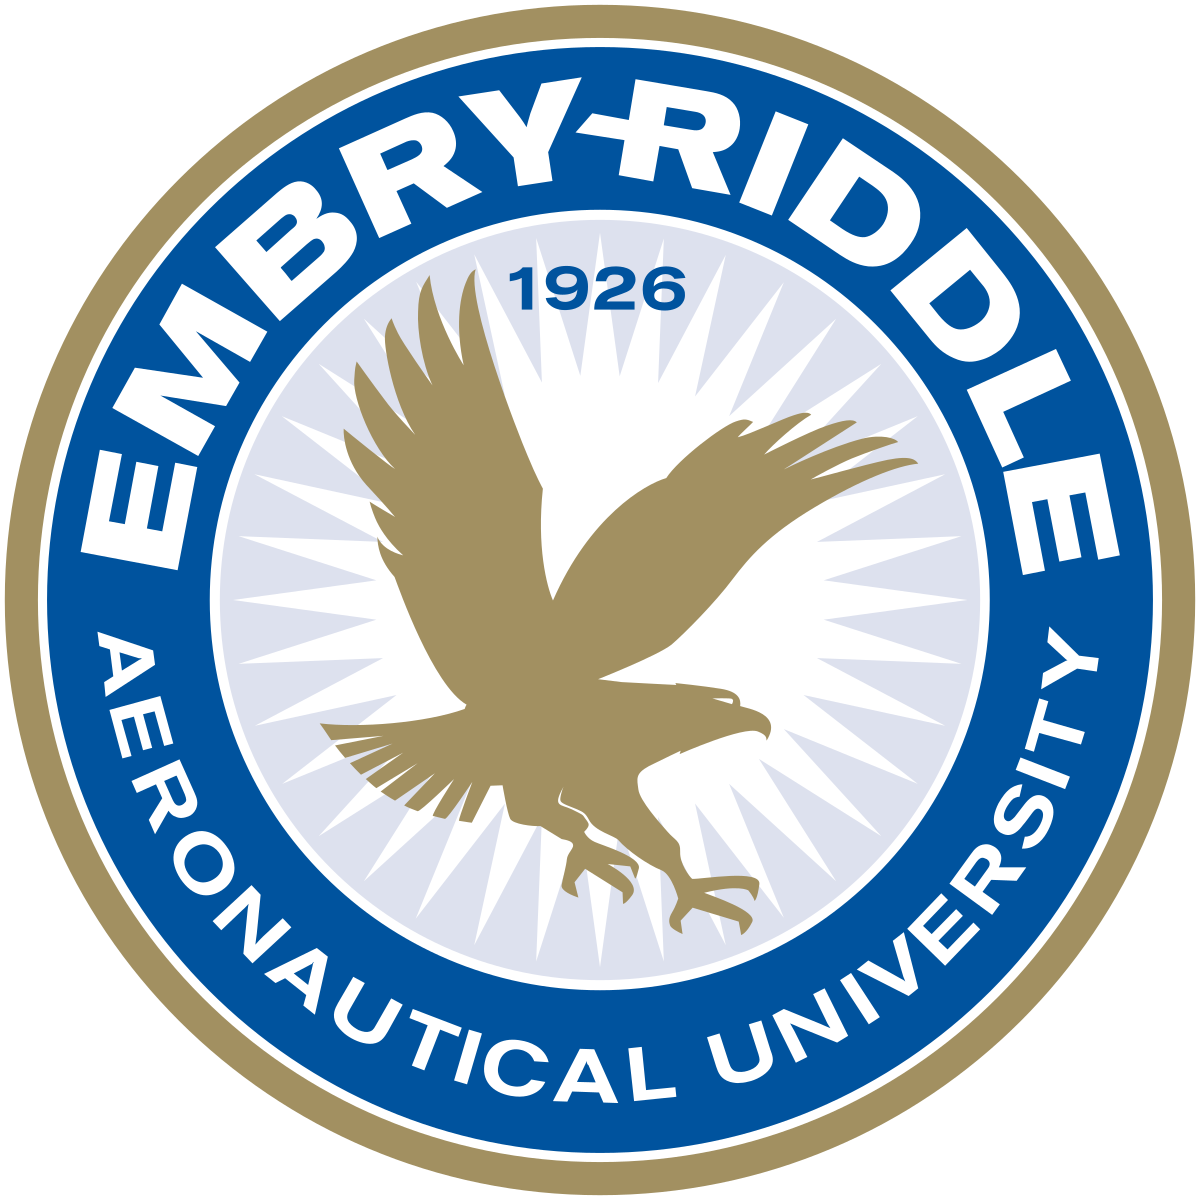 embry riddle aero university